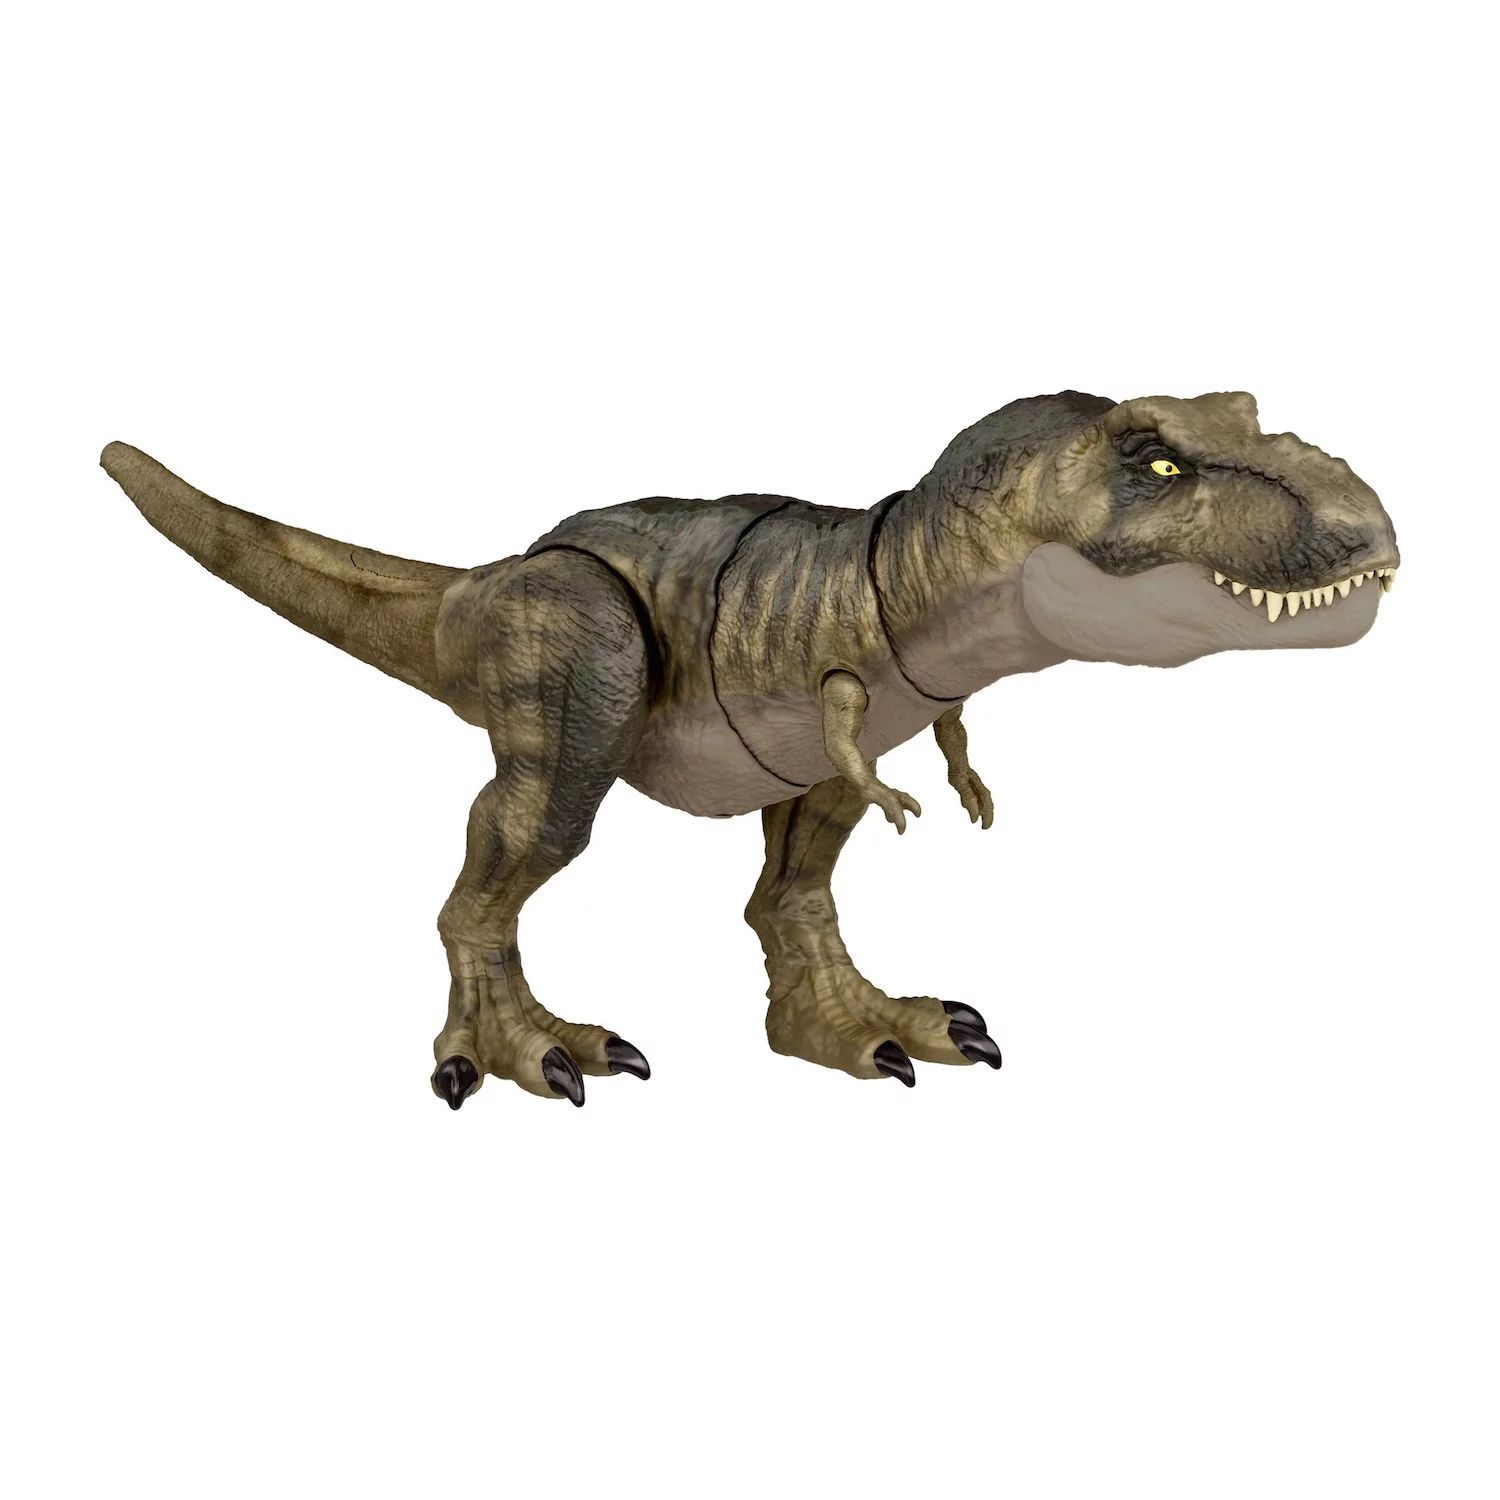 Игрушка-динозавр Jurassic World Dominion Tyrannosaurus Rex, звук Thrash N Devour, Chomp Action Mattel mattel скрабл дорожный